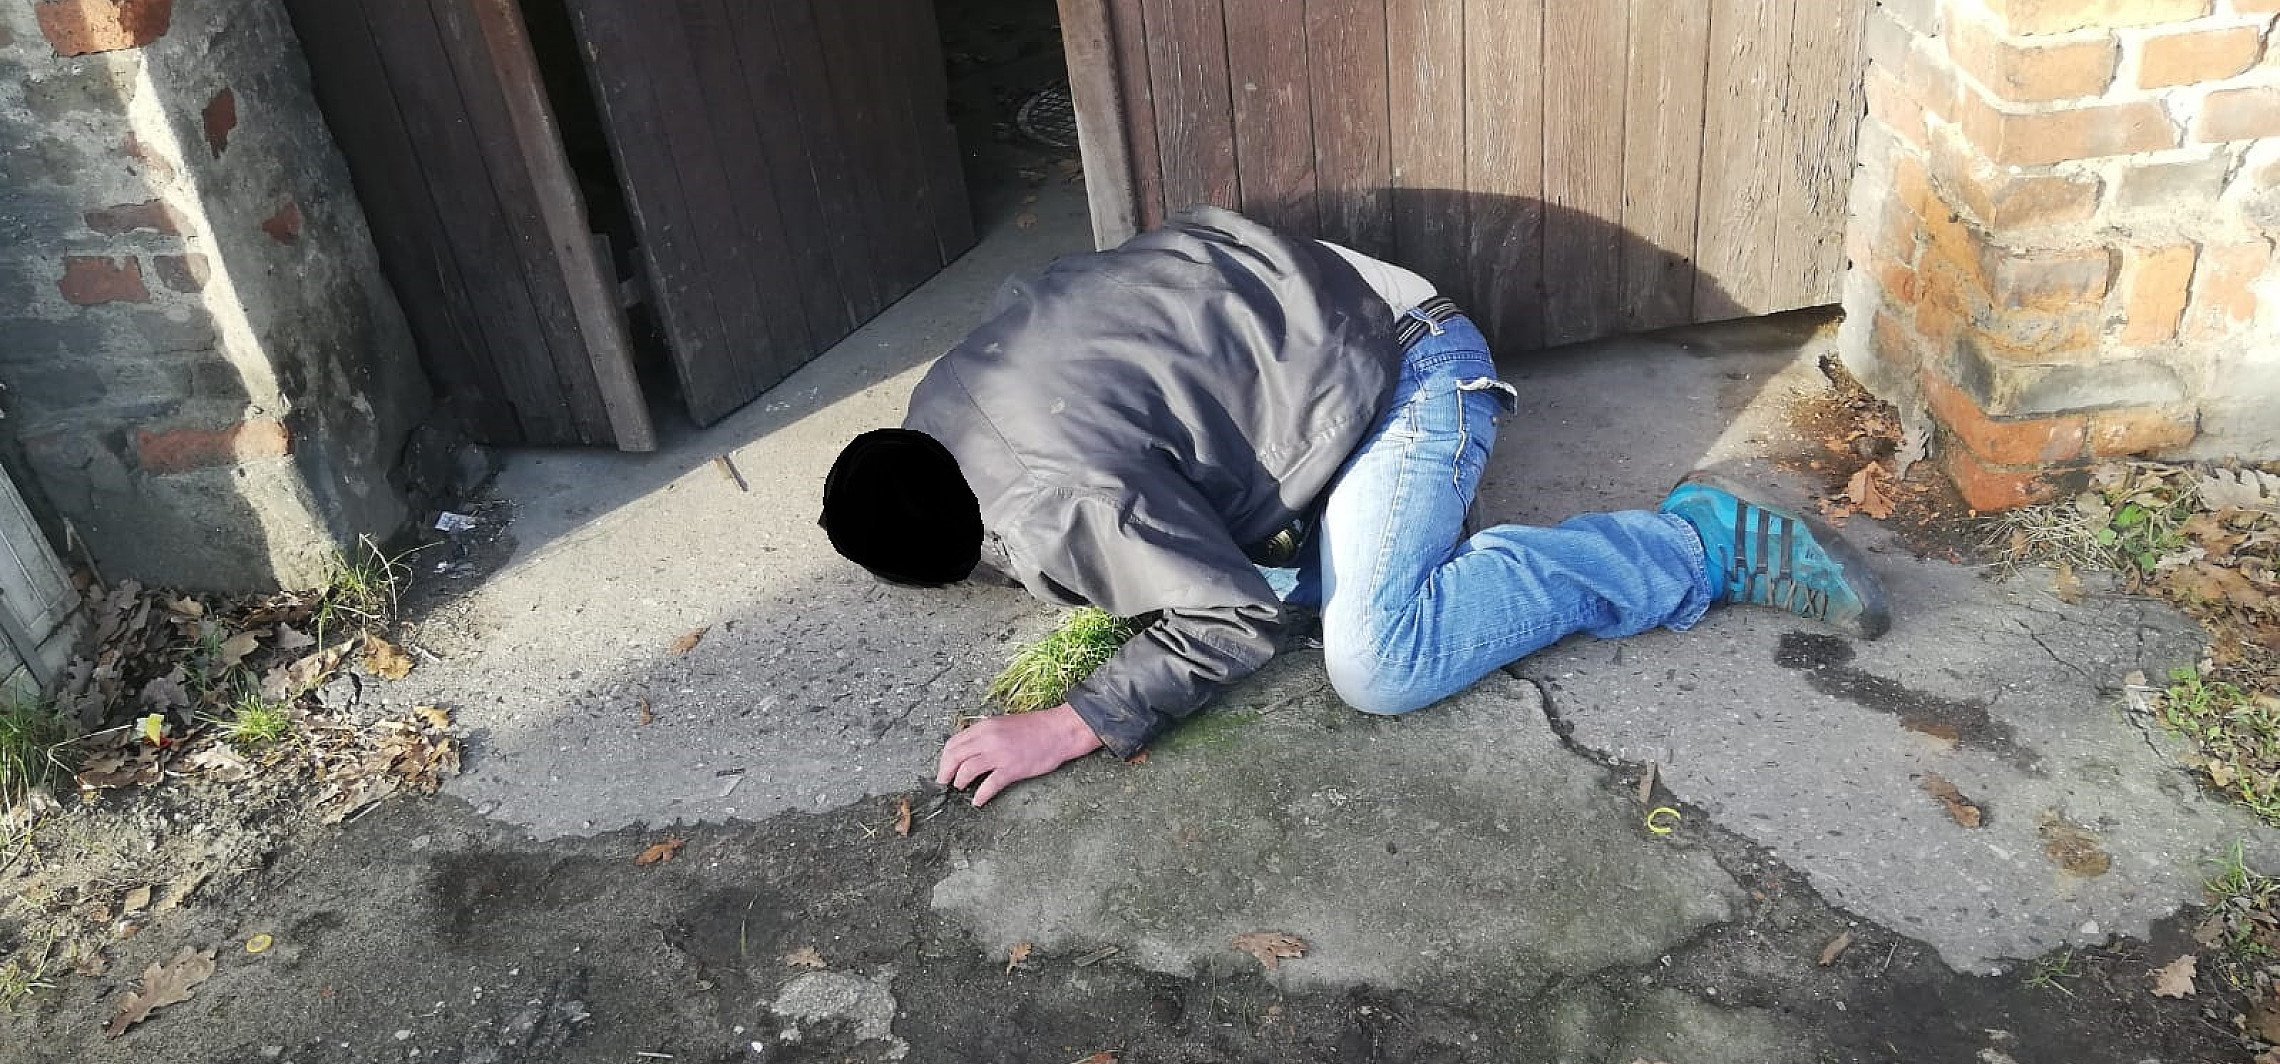 Inowrocław - Setki interwencji wobec bezdomnych i nietrzeźwych